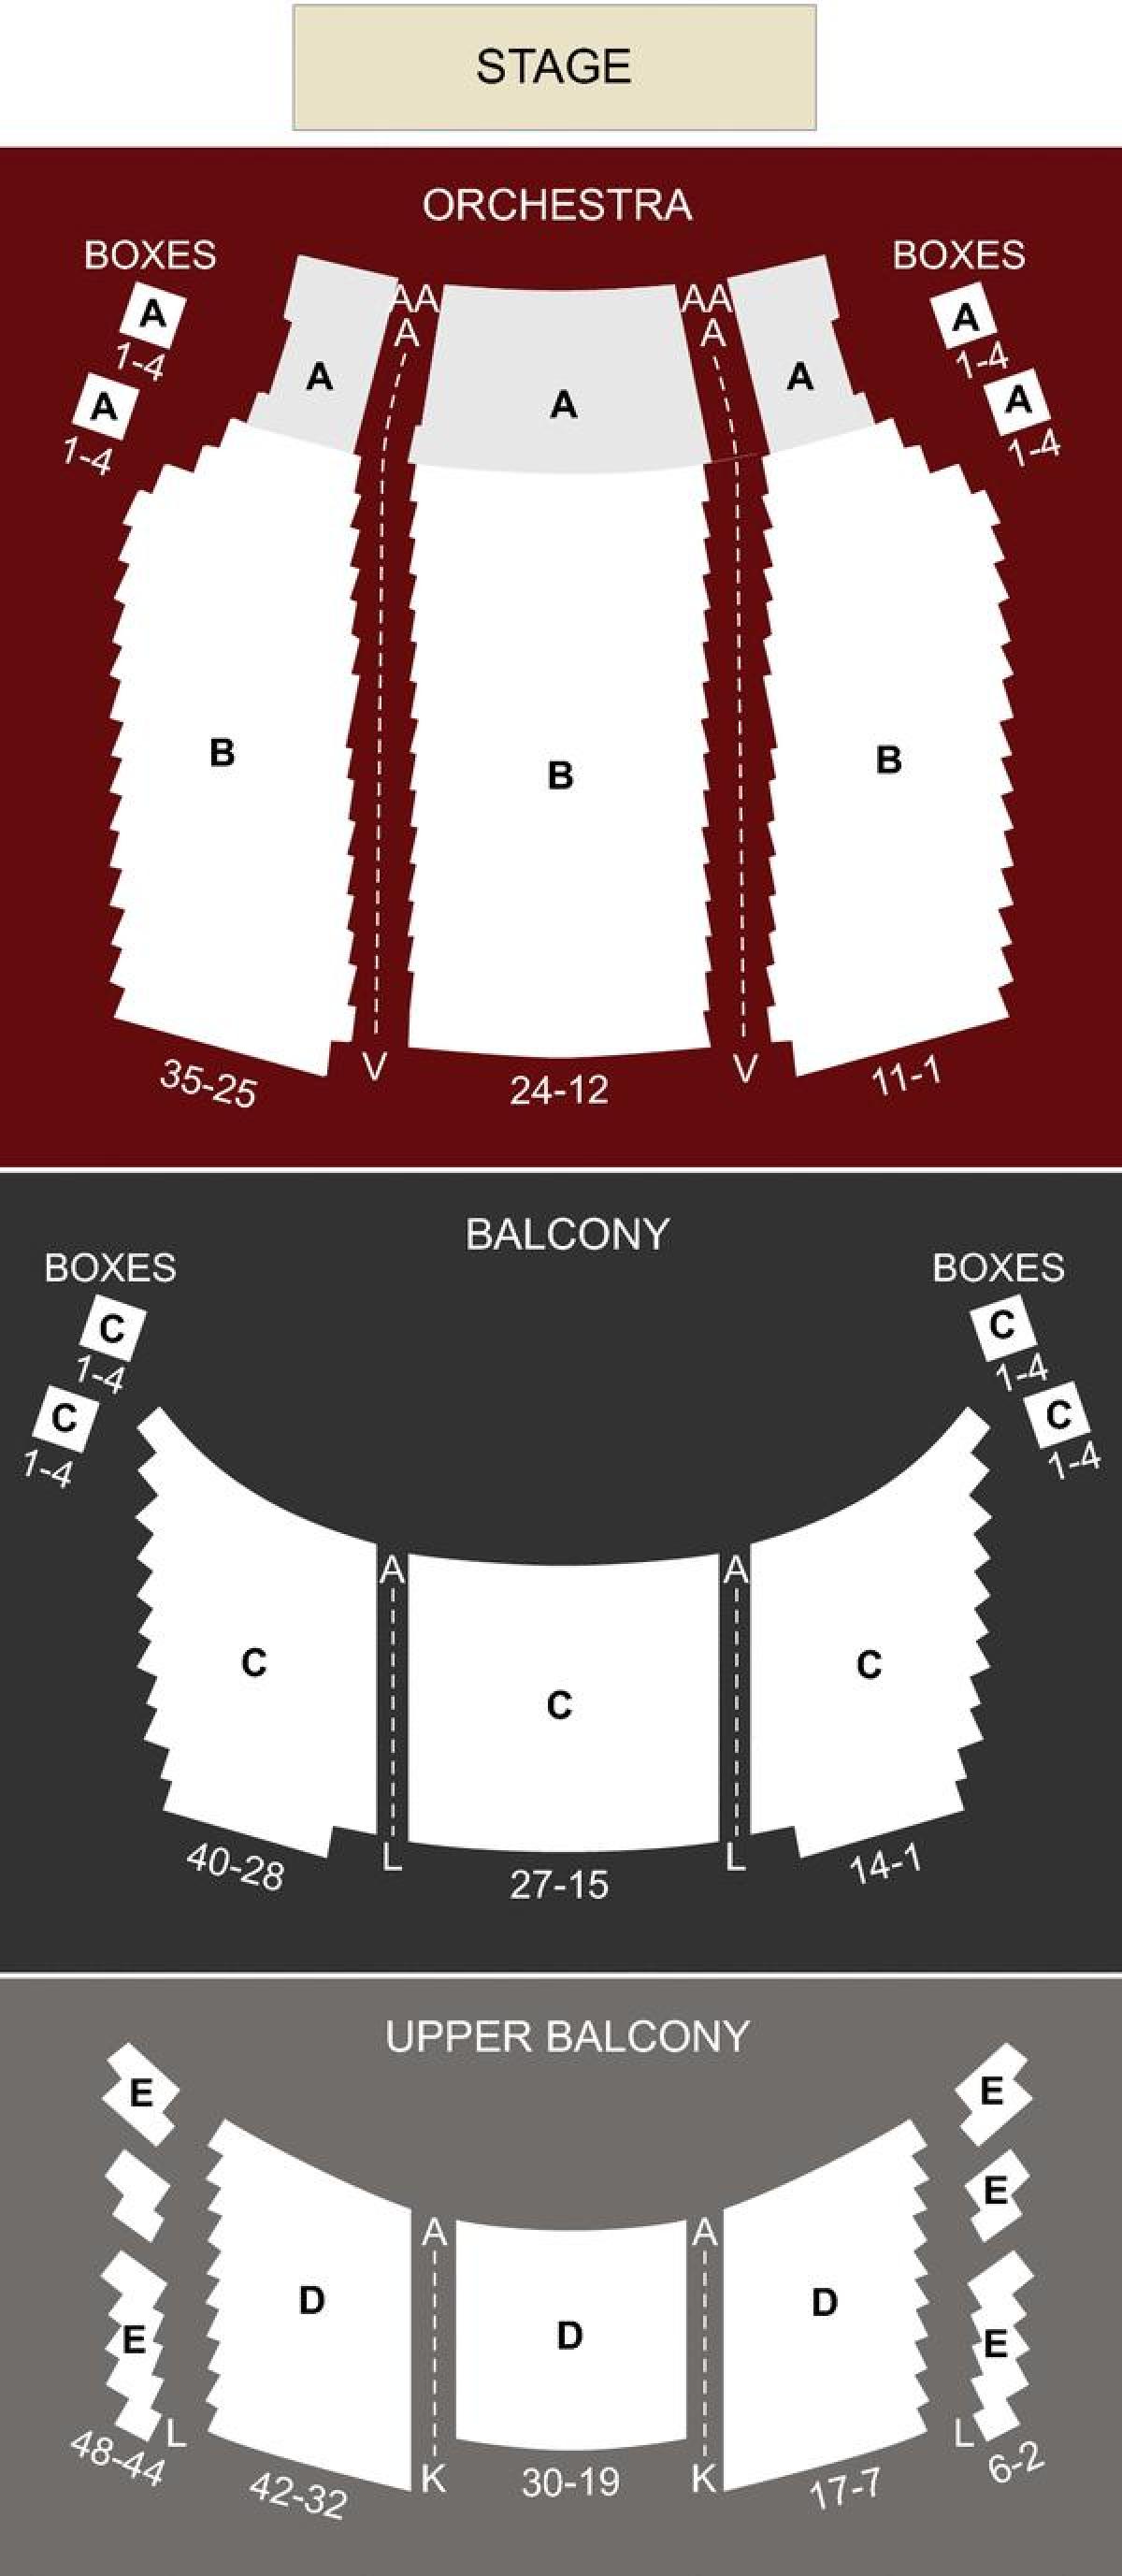 نقشہ کے شاہی تھیٹر الیگزینڈرا